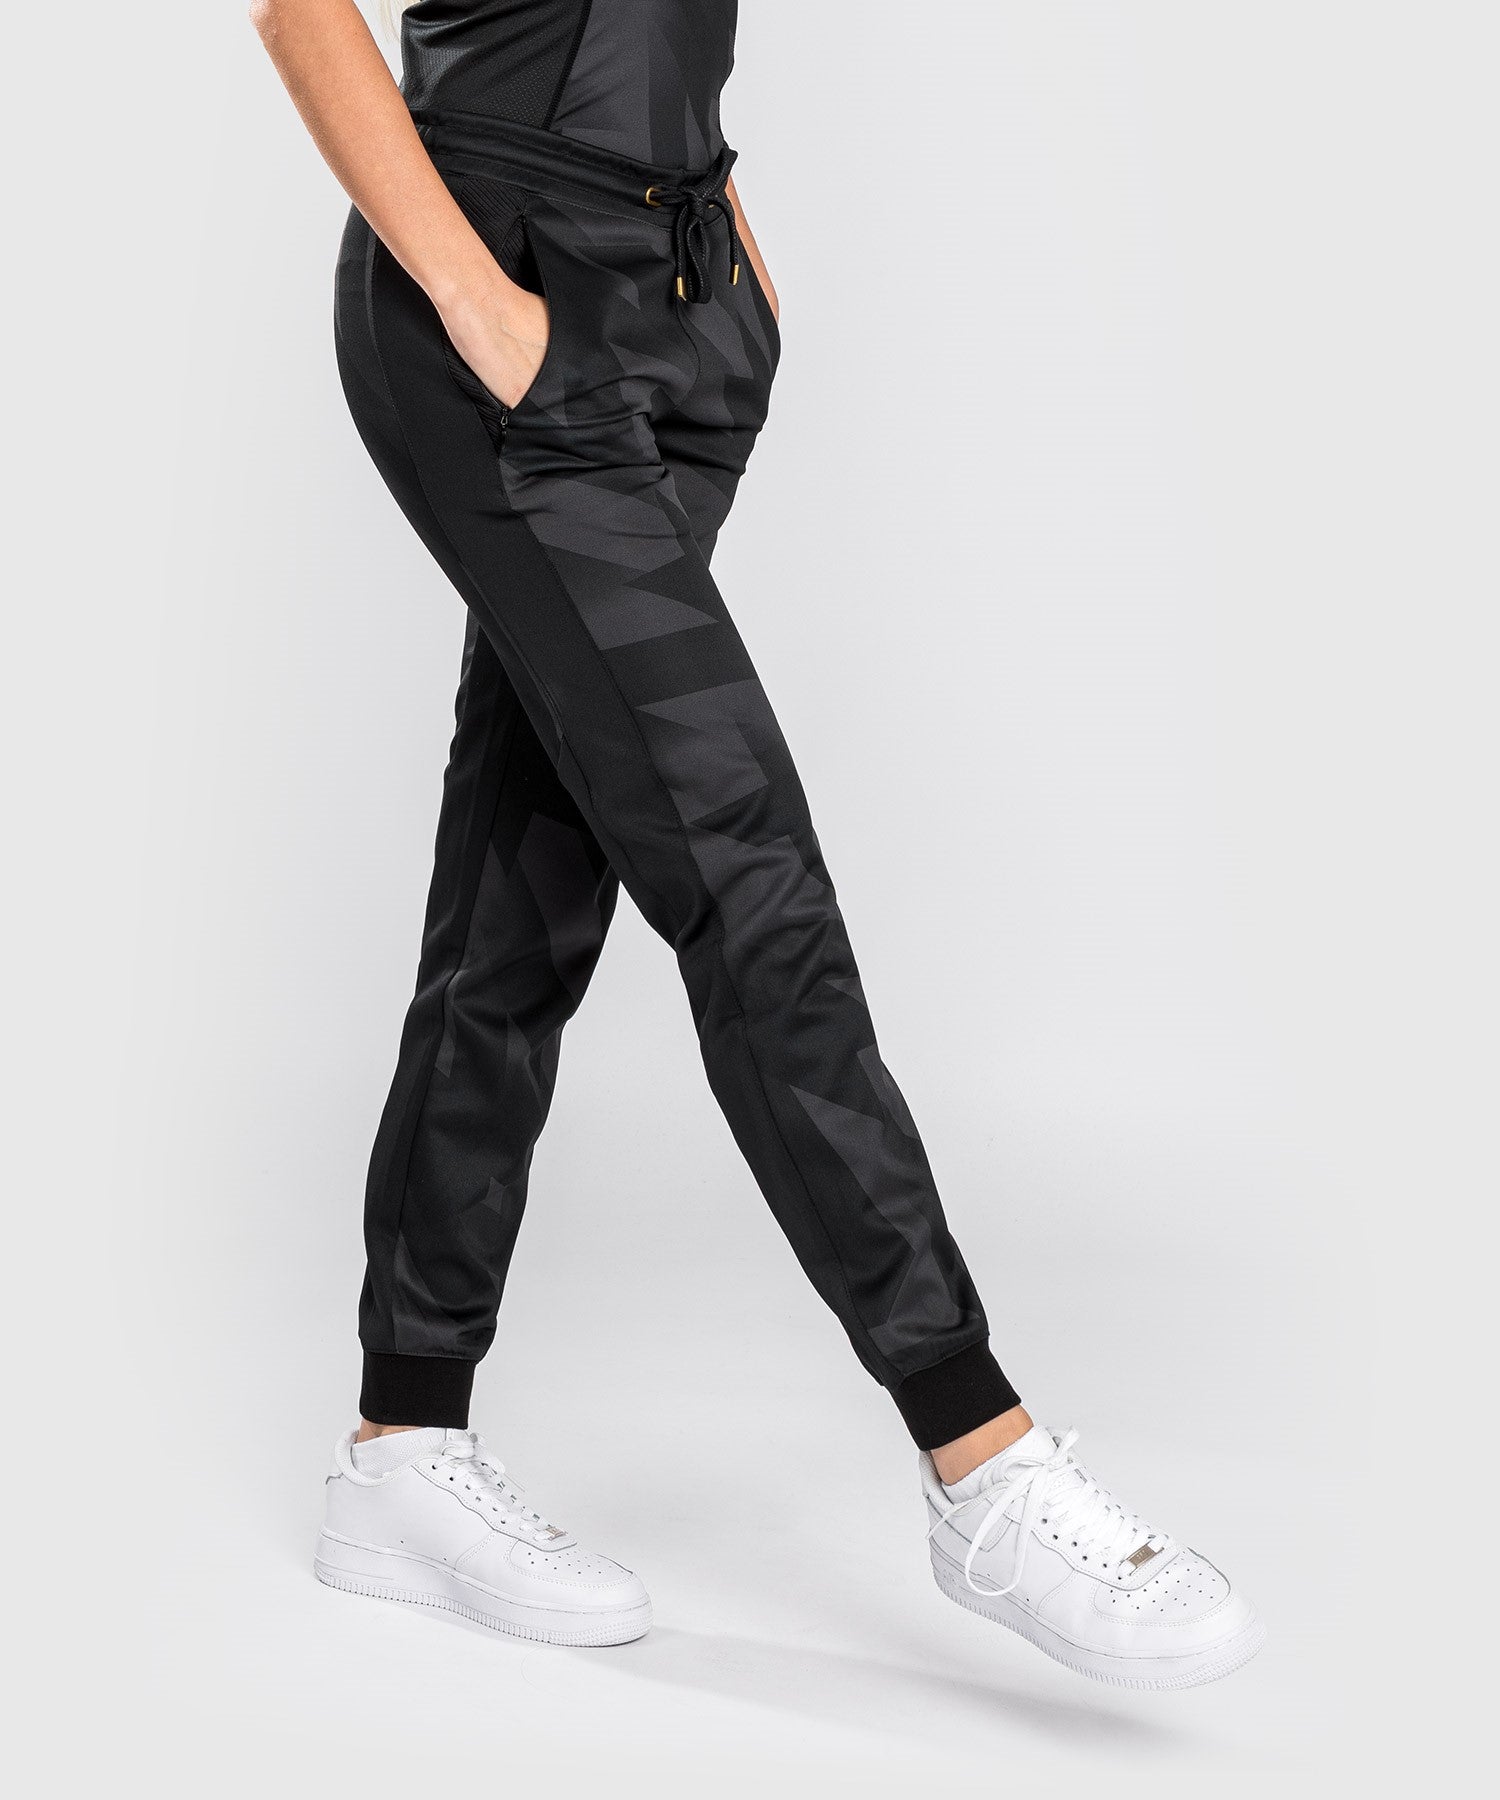 pantalon de jogging pour femme coupe ample noir pantalons femme